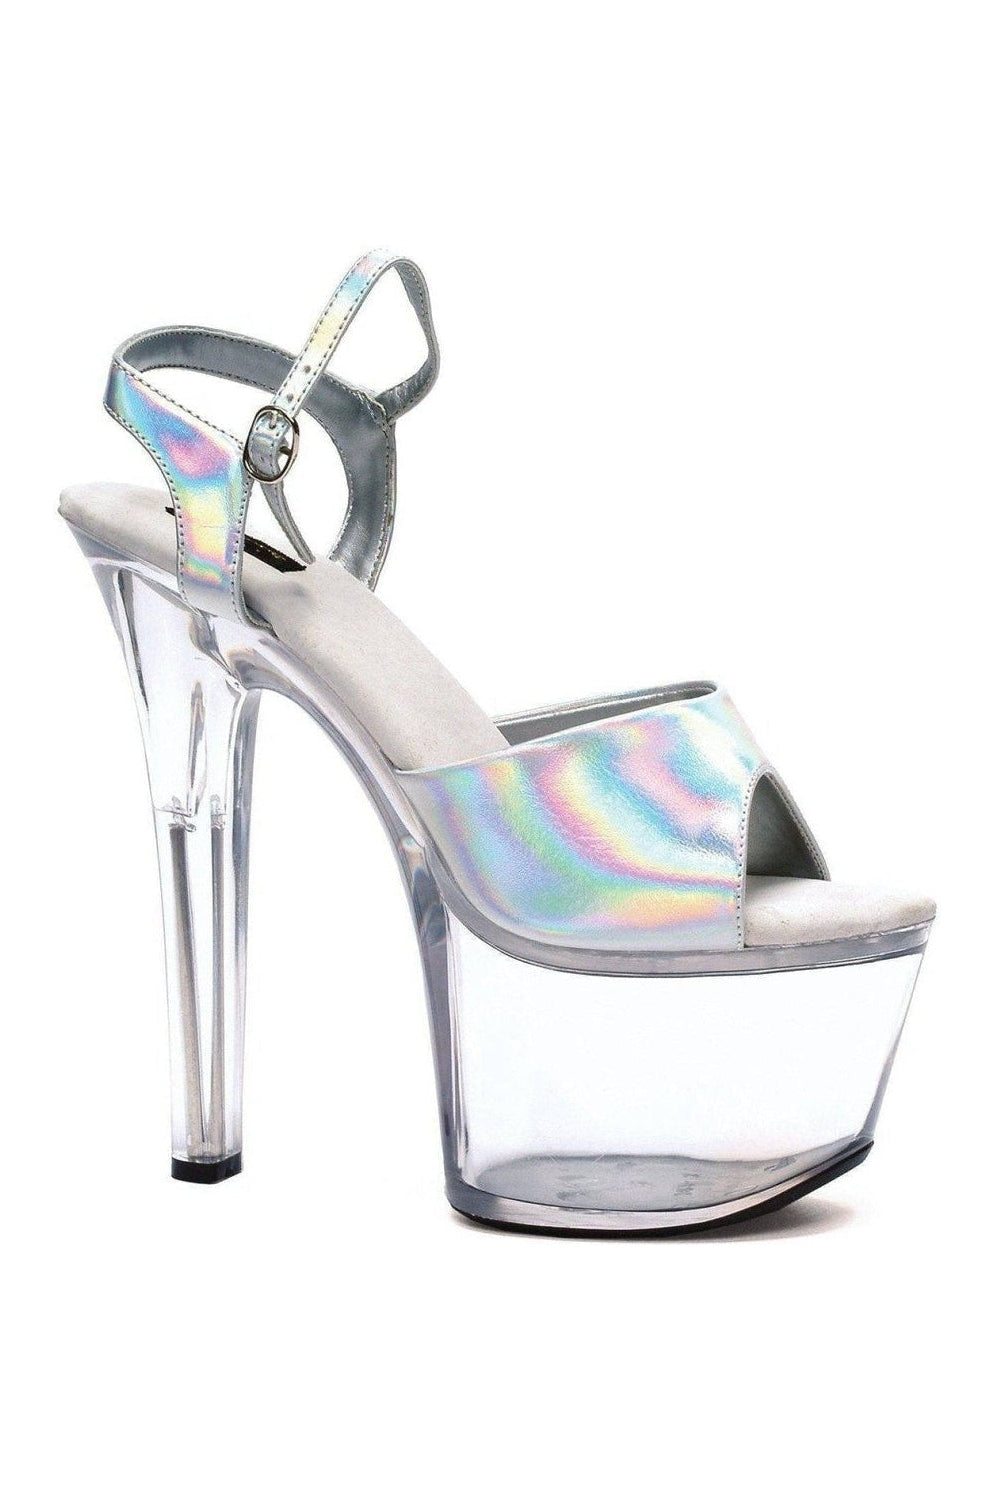 711-FLIRT-H Stripper Sandal | Silver Patent-Ellie Shoes-SEXYSHOES.COM